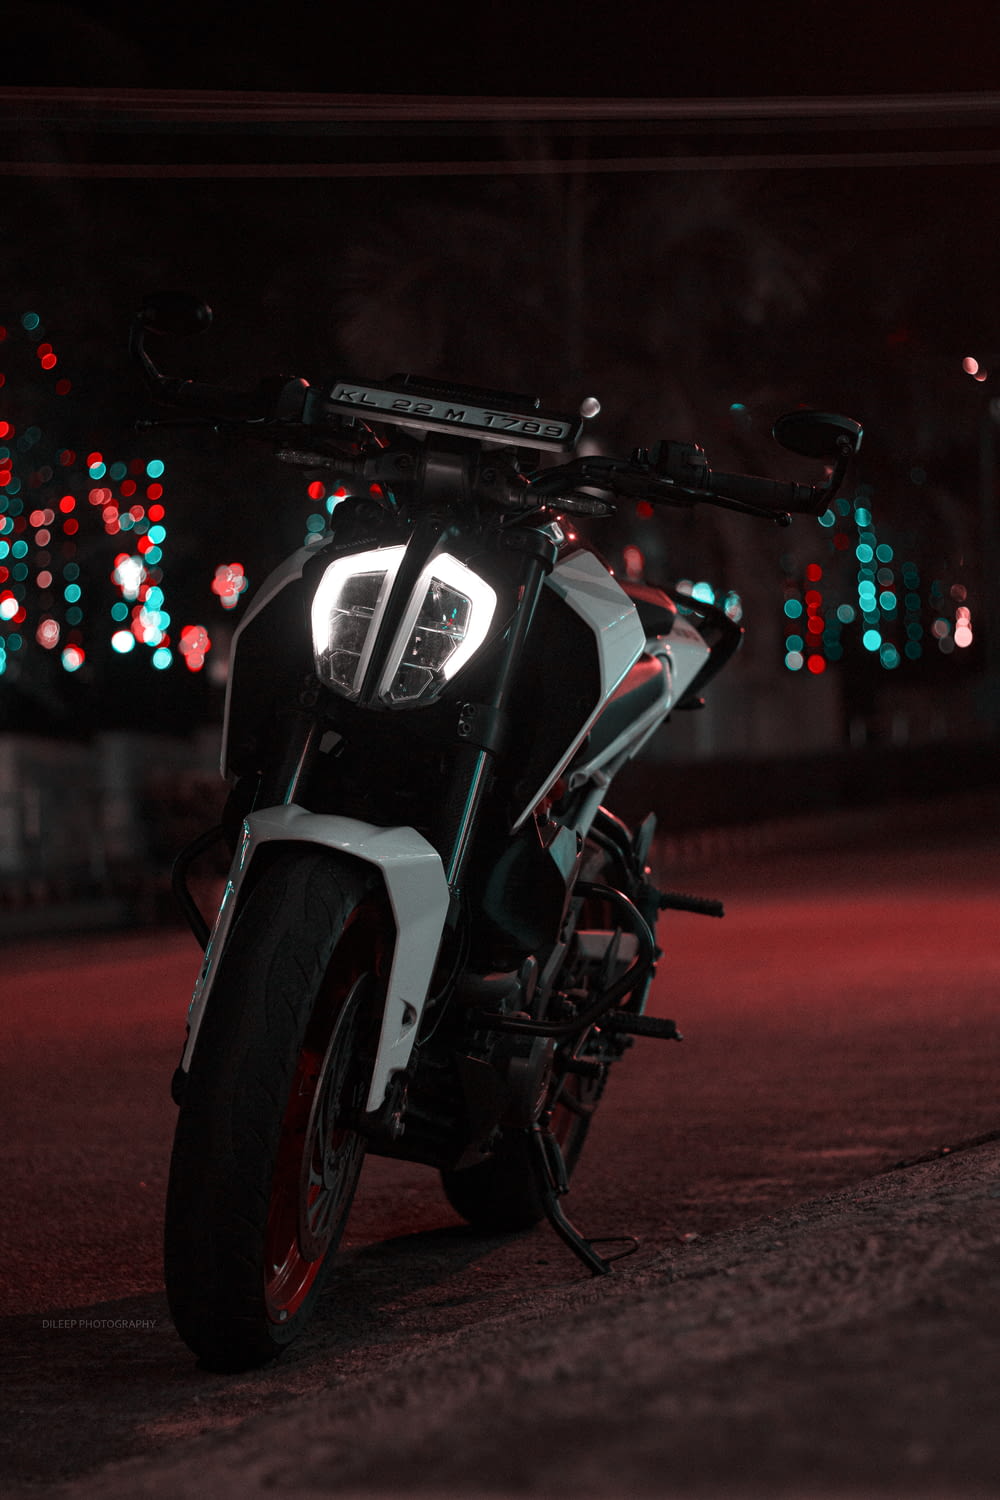 moto noire et blanche sur la route pendant la nuit